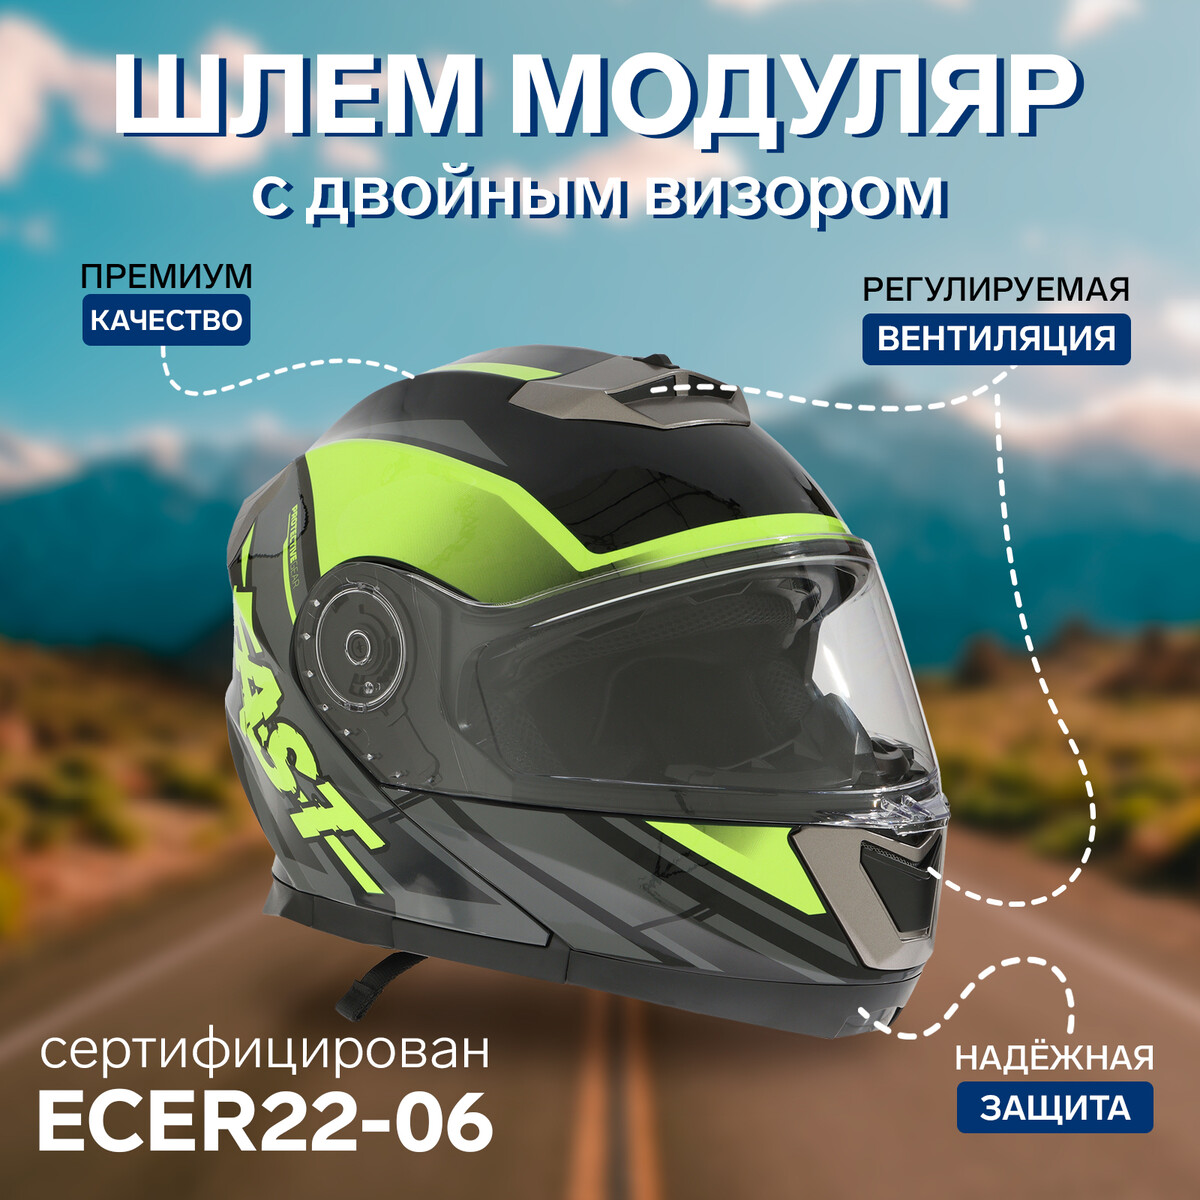 Шлем модуляр с двумя визорами, размер xl (60-61), модель - bld-160e, черно-желтый щиток защитный welder визор лайт эластичное оголовье